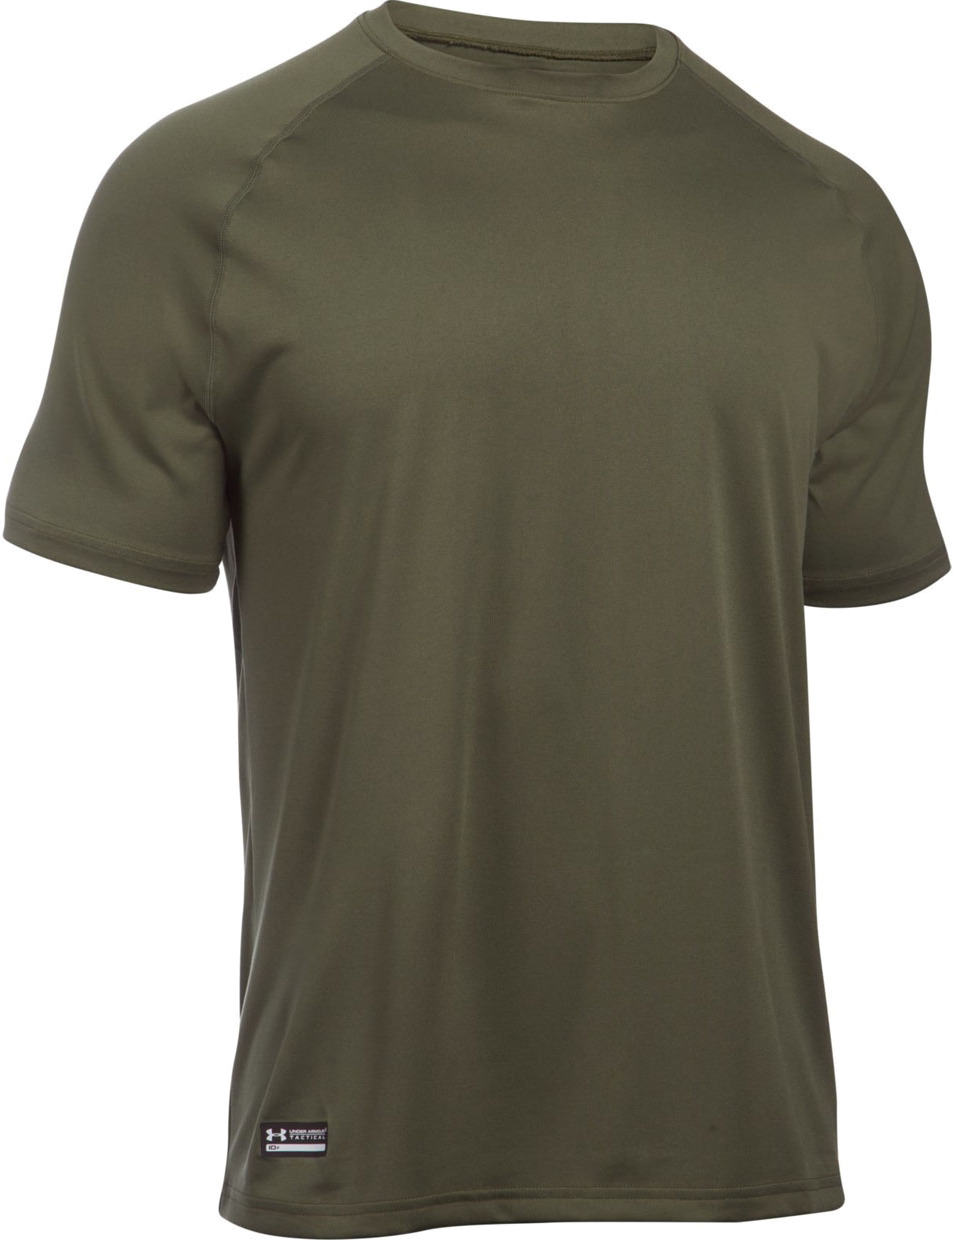 Мужская футболка Under Armour Tactical Tech ™ SS 1005684-390